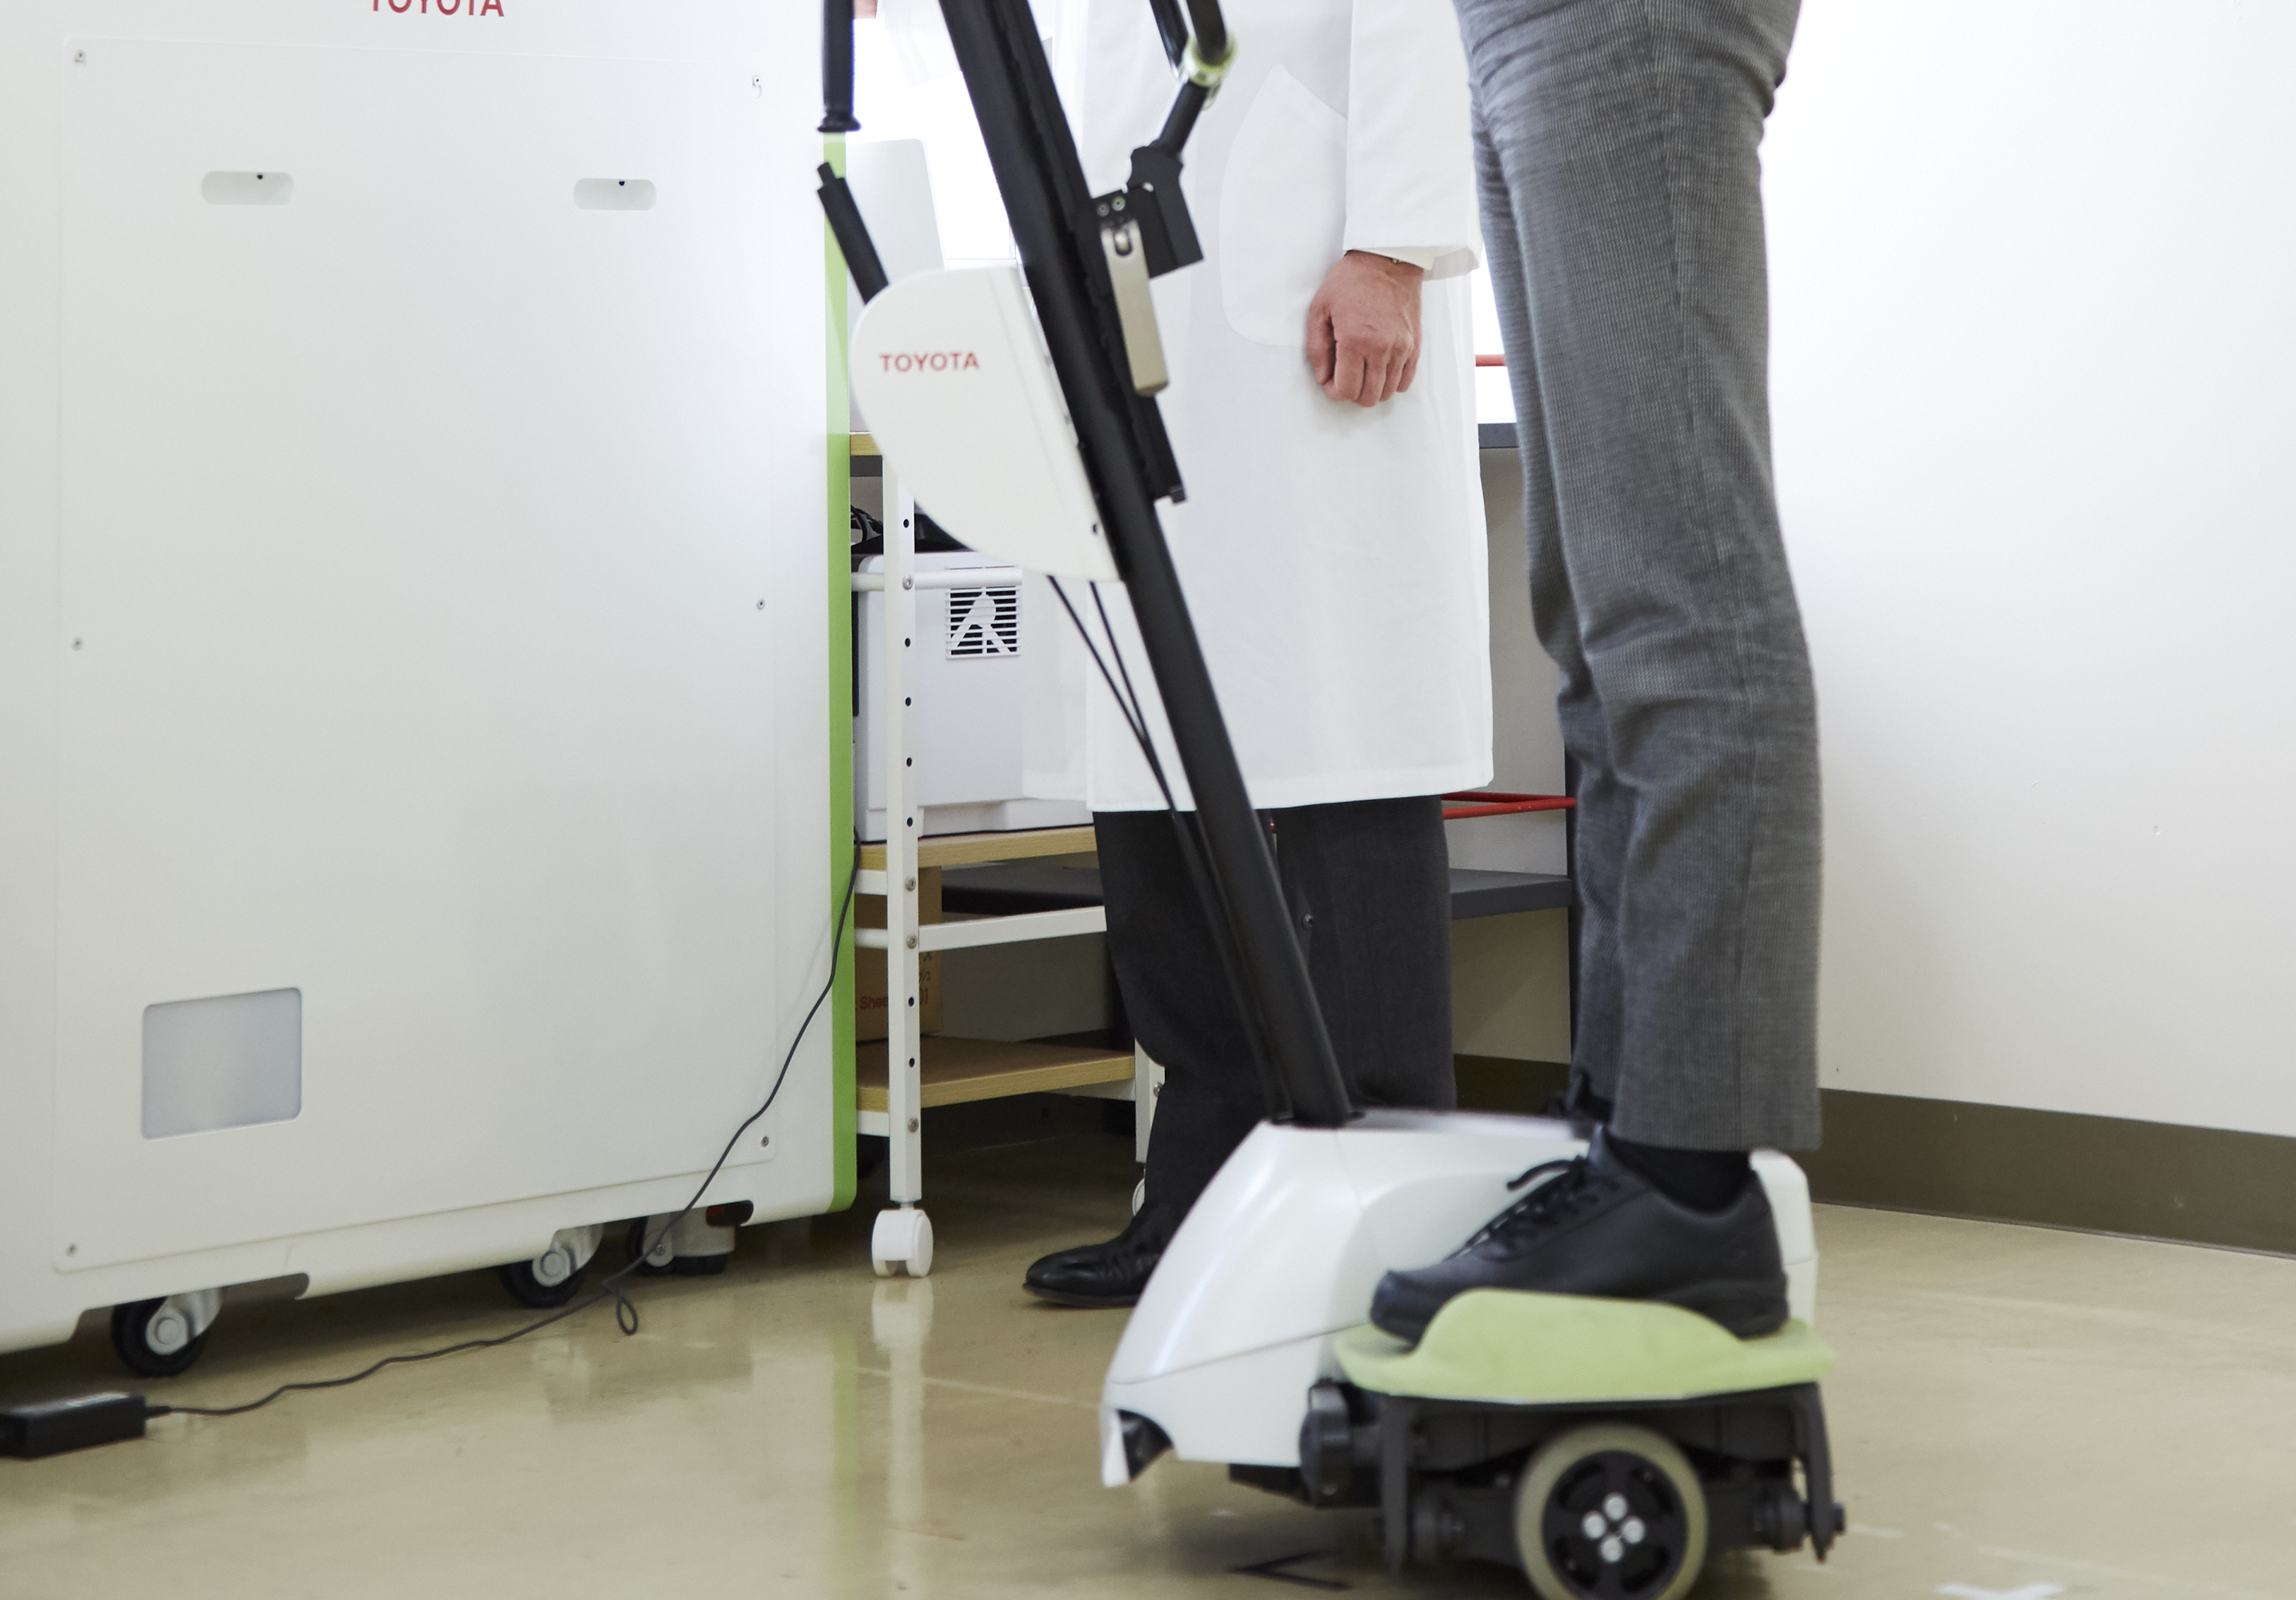 BEAR（バランス練習アシスト/Balance Exercise Assist Robot）：リハビリテーションによる転倒予防は高齢化社会に対する挑戦でもあり、兵庫医科大学では、BEARのエビデンス創出を目指し、リハビリテーション科医師と療法士共同で研究を進めています。